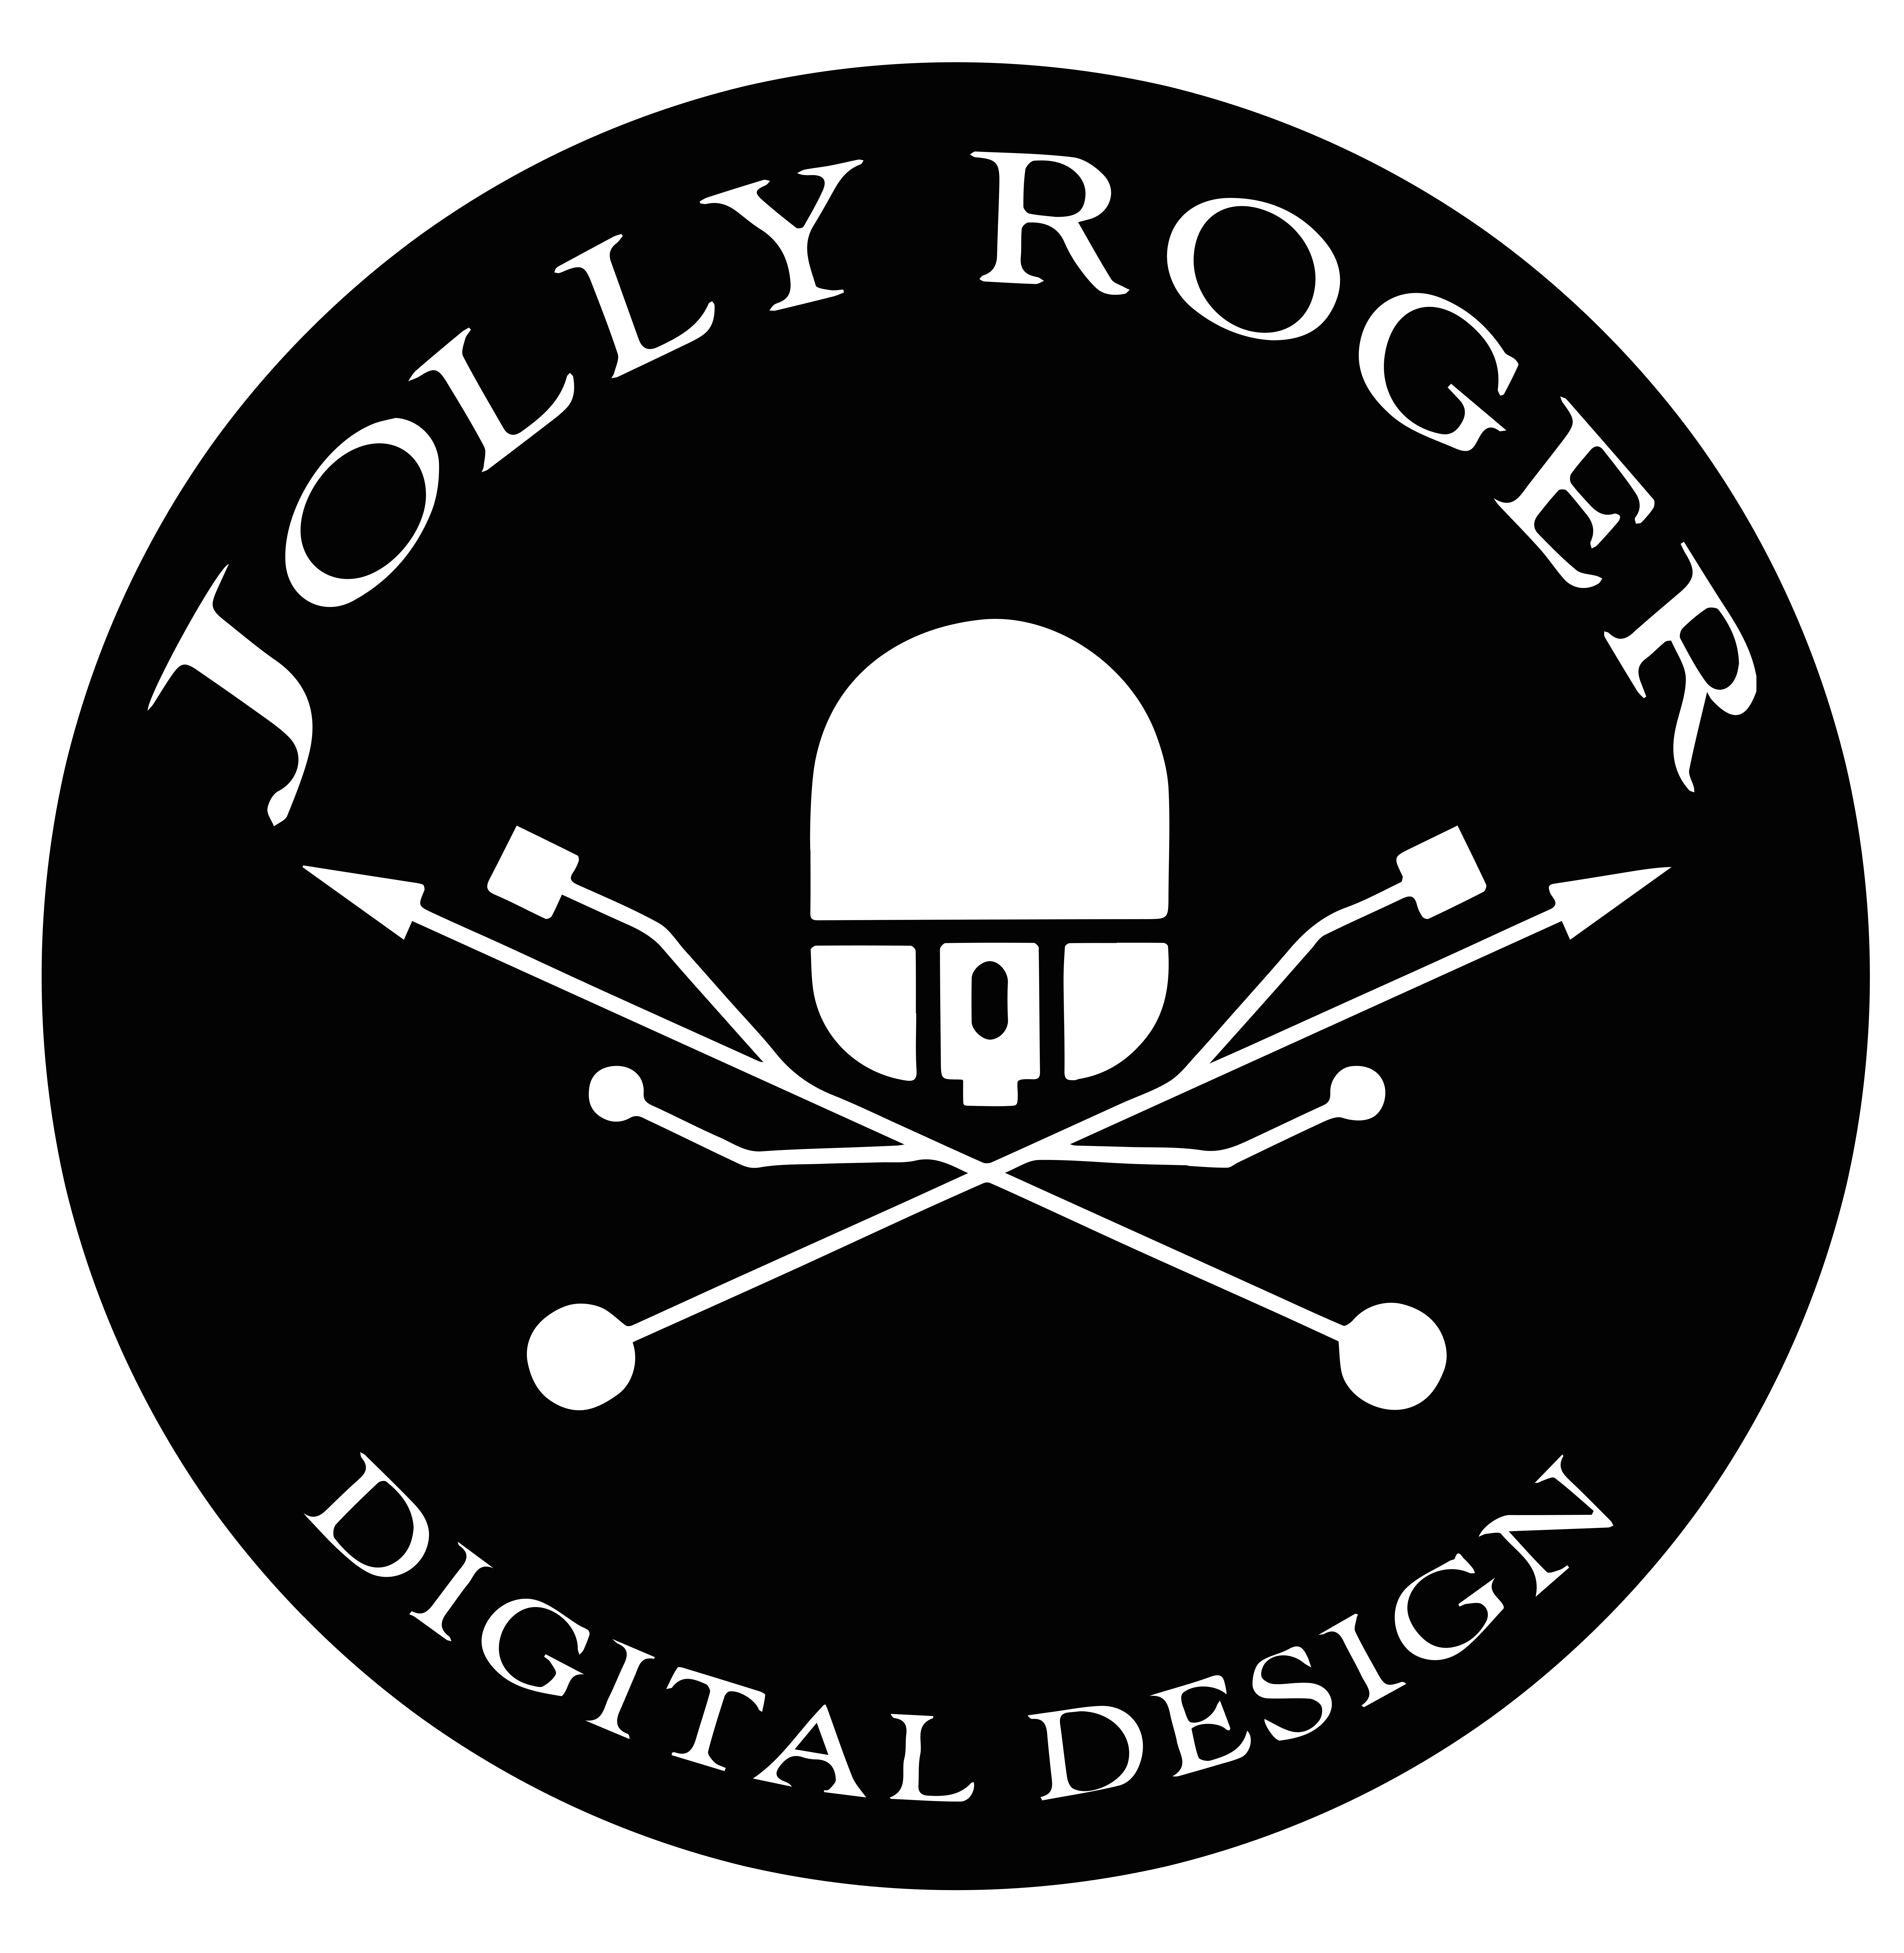 JollyRoger Digital Marketing